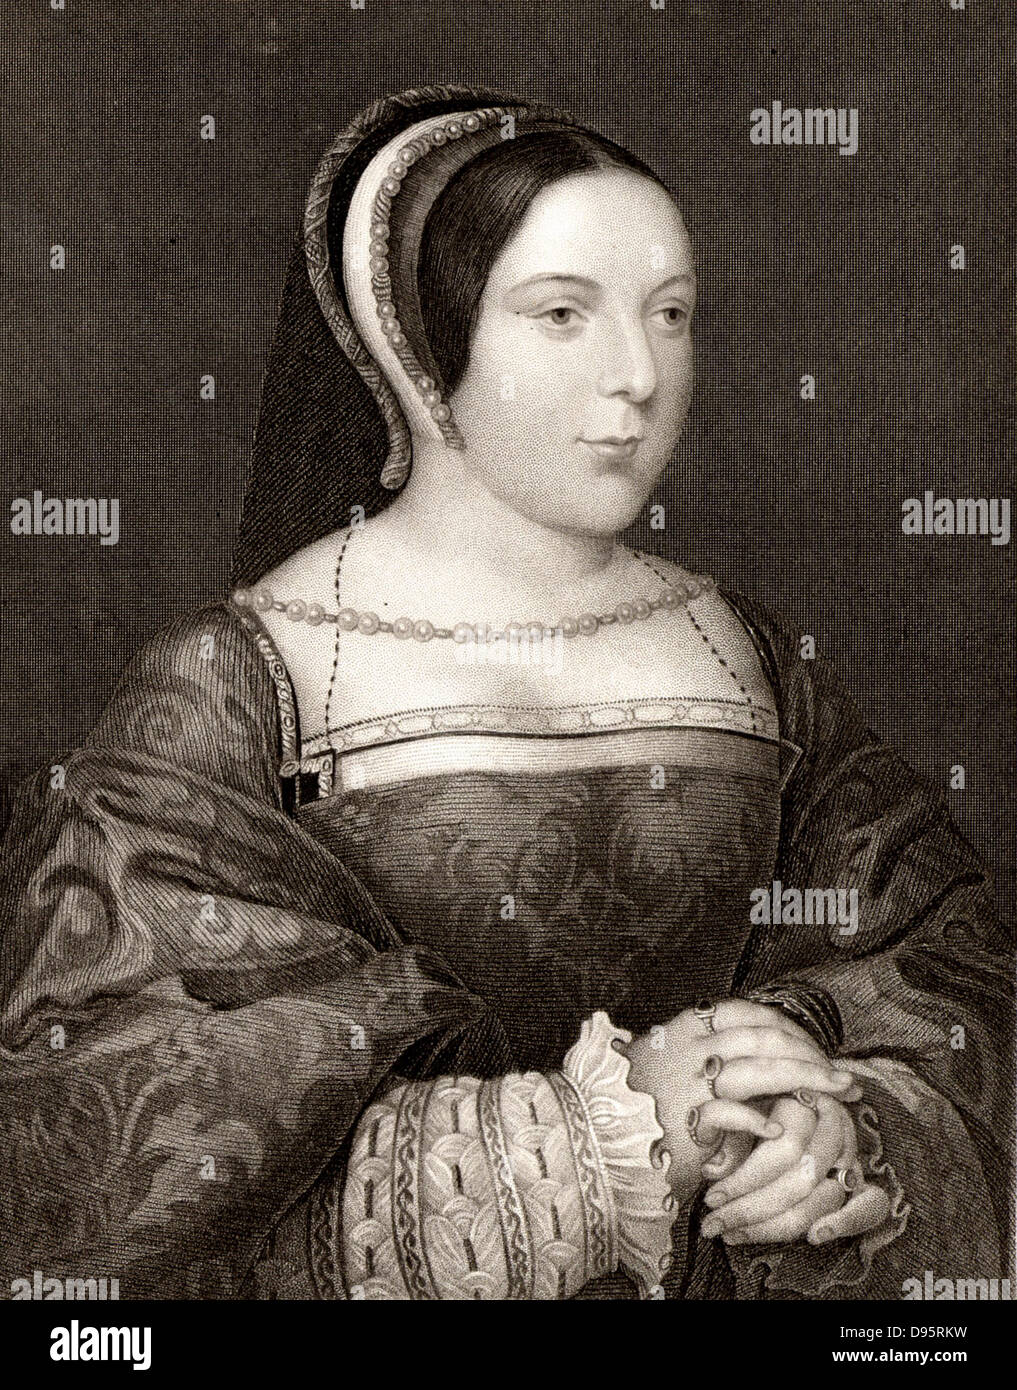 Margaret Tudor (1489-1541) reine consort de l'Écosse, était la fille d'Henri VII d'Angleterre. Marié Jacques IV d'Écosse en 1503. Après gravure portrait par Holbein. Banque D'Images